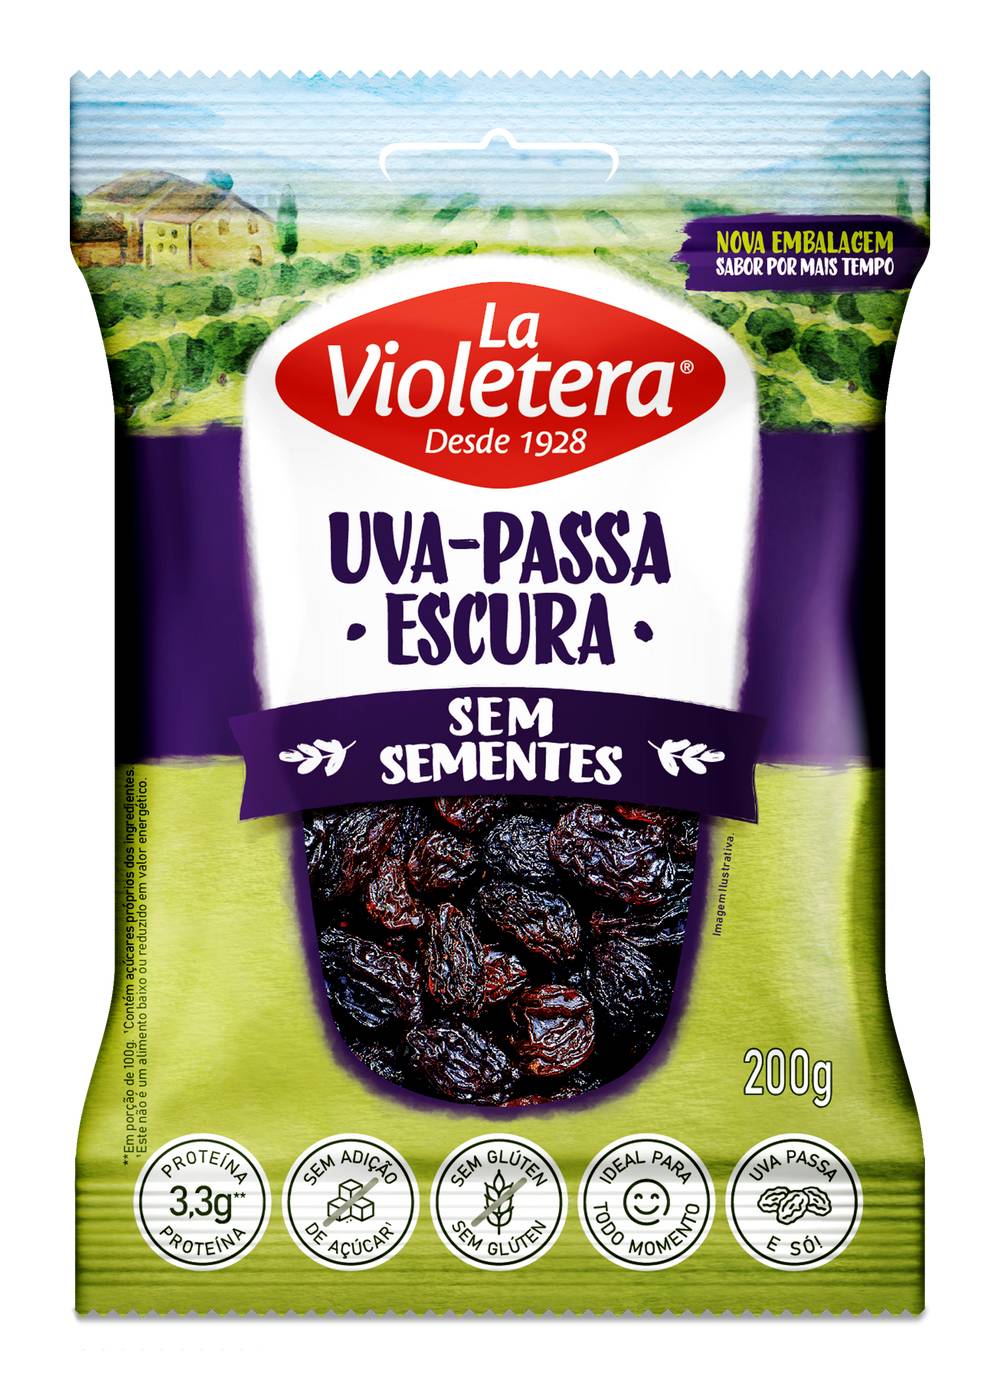 La violetera uva passa escura sem semente (200g)